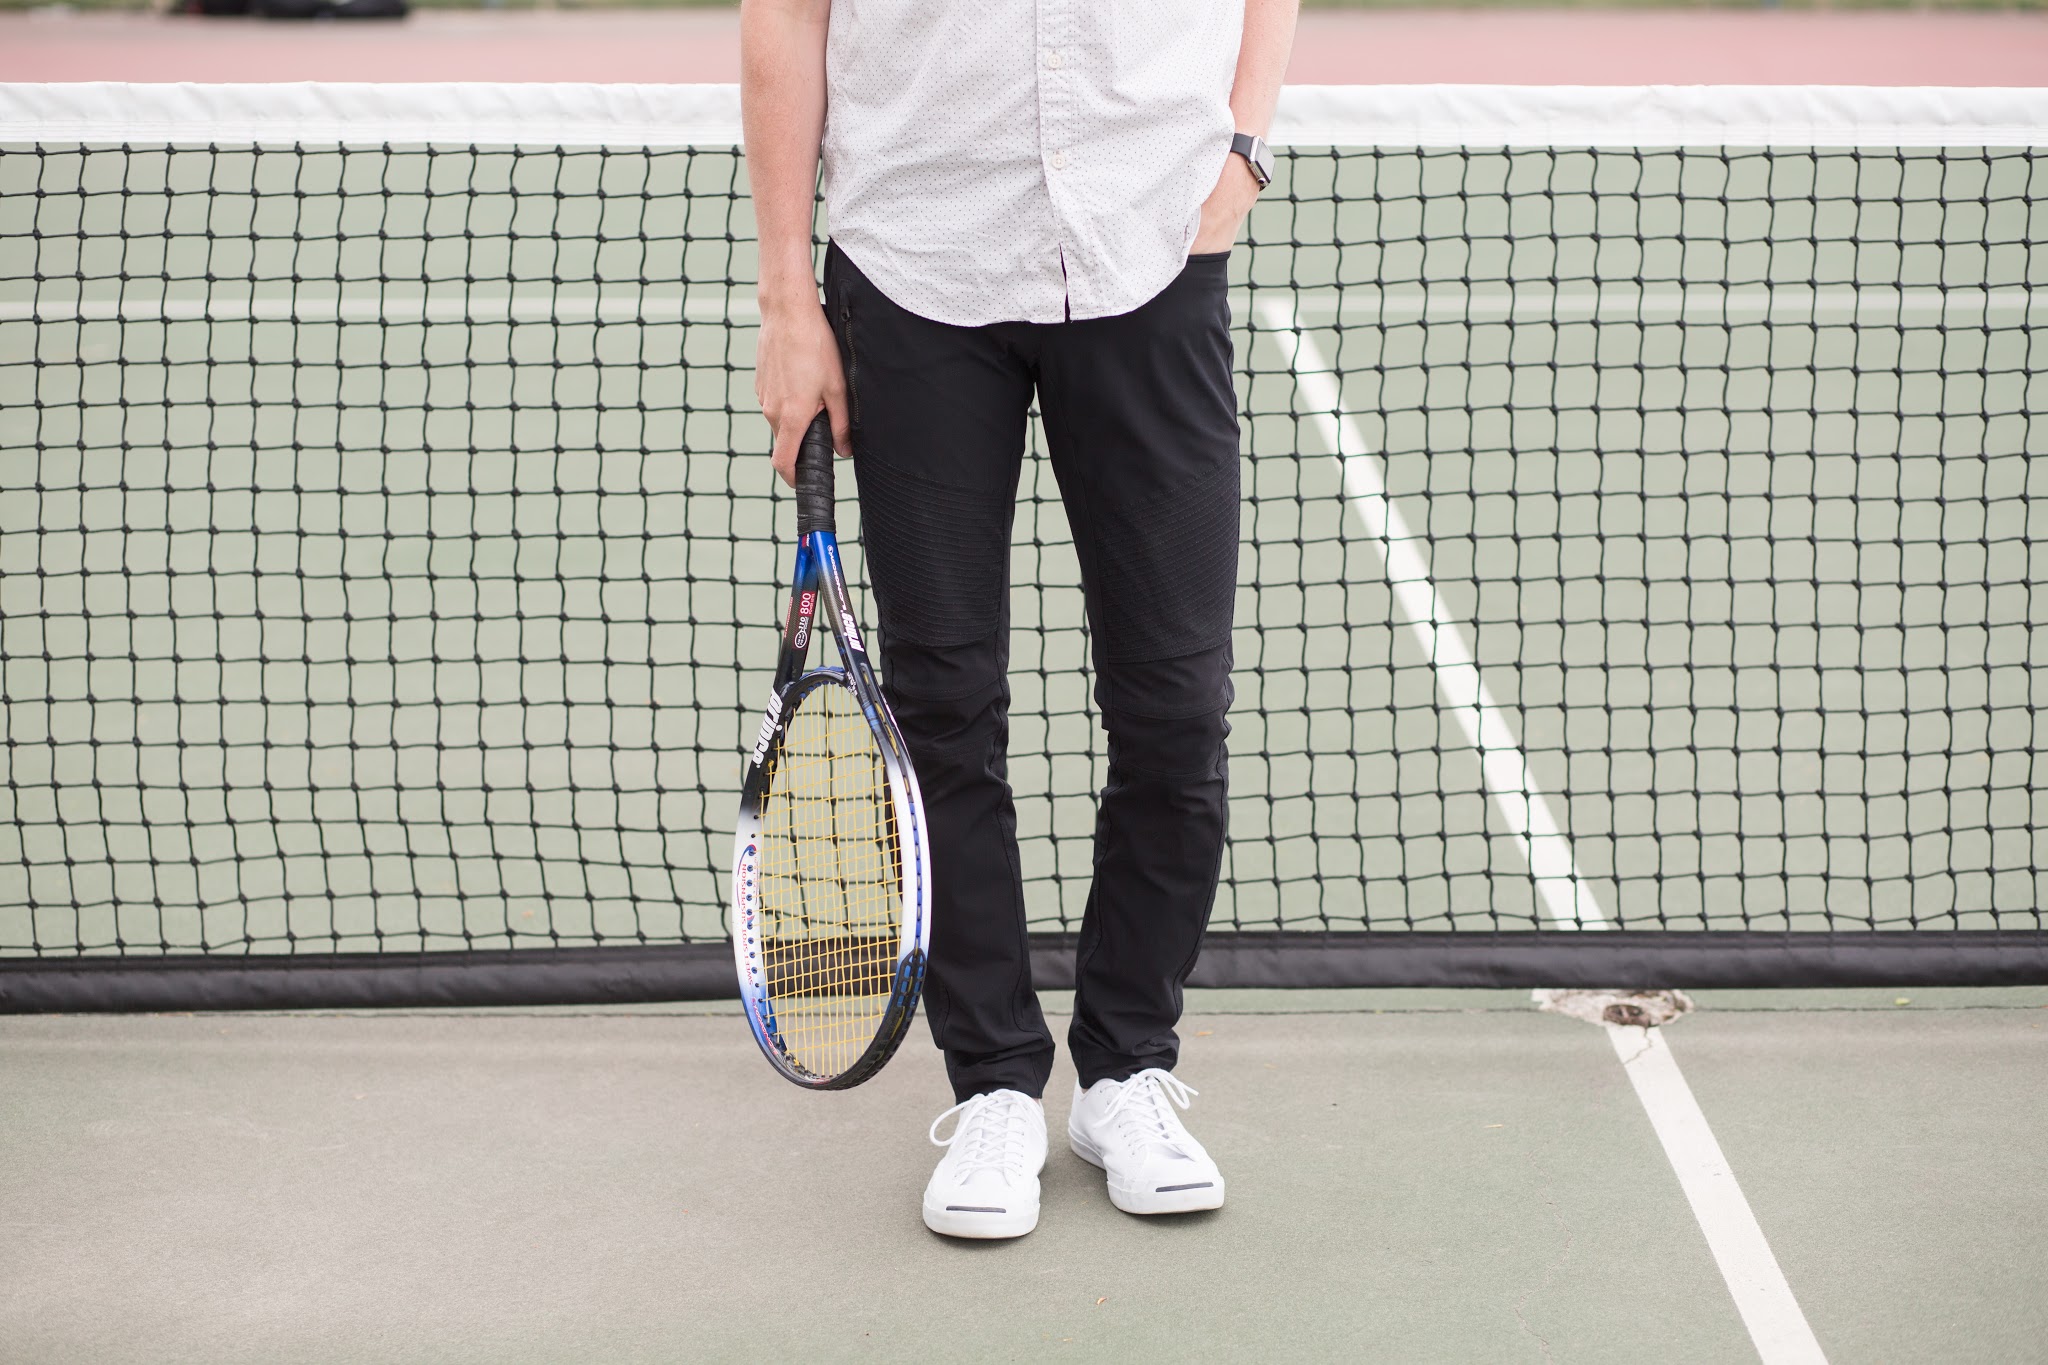 menswear tennis style